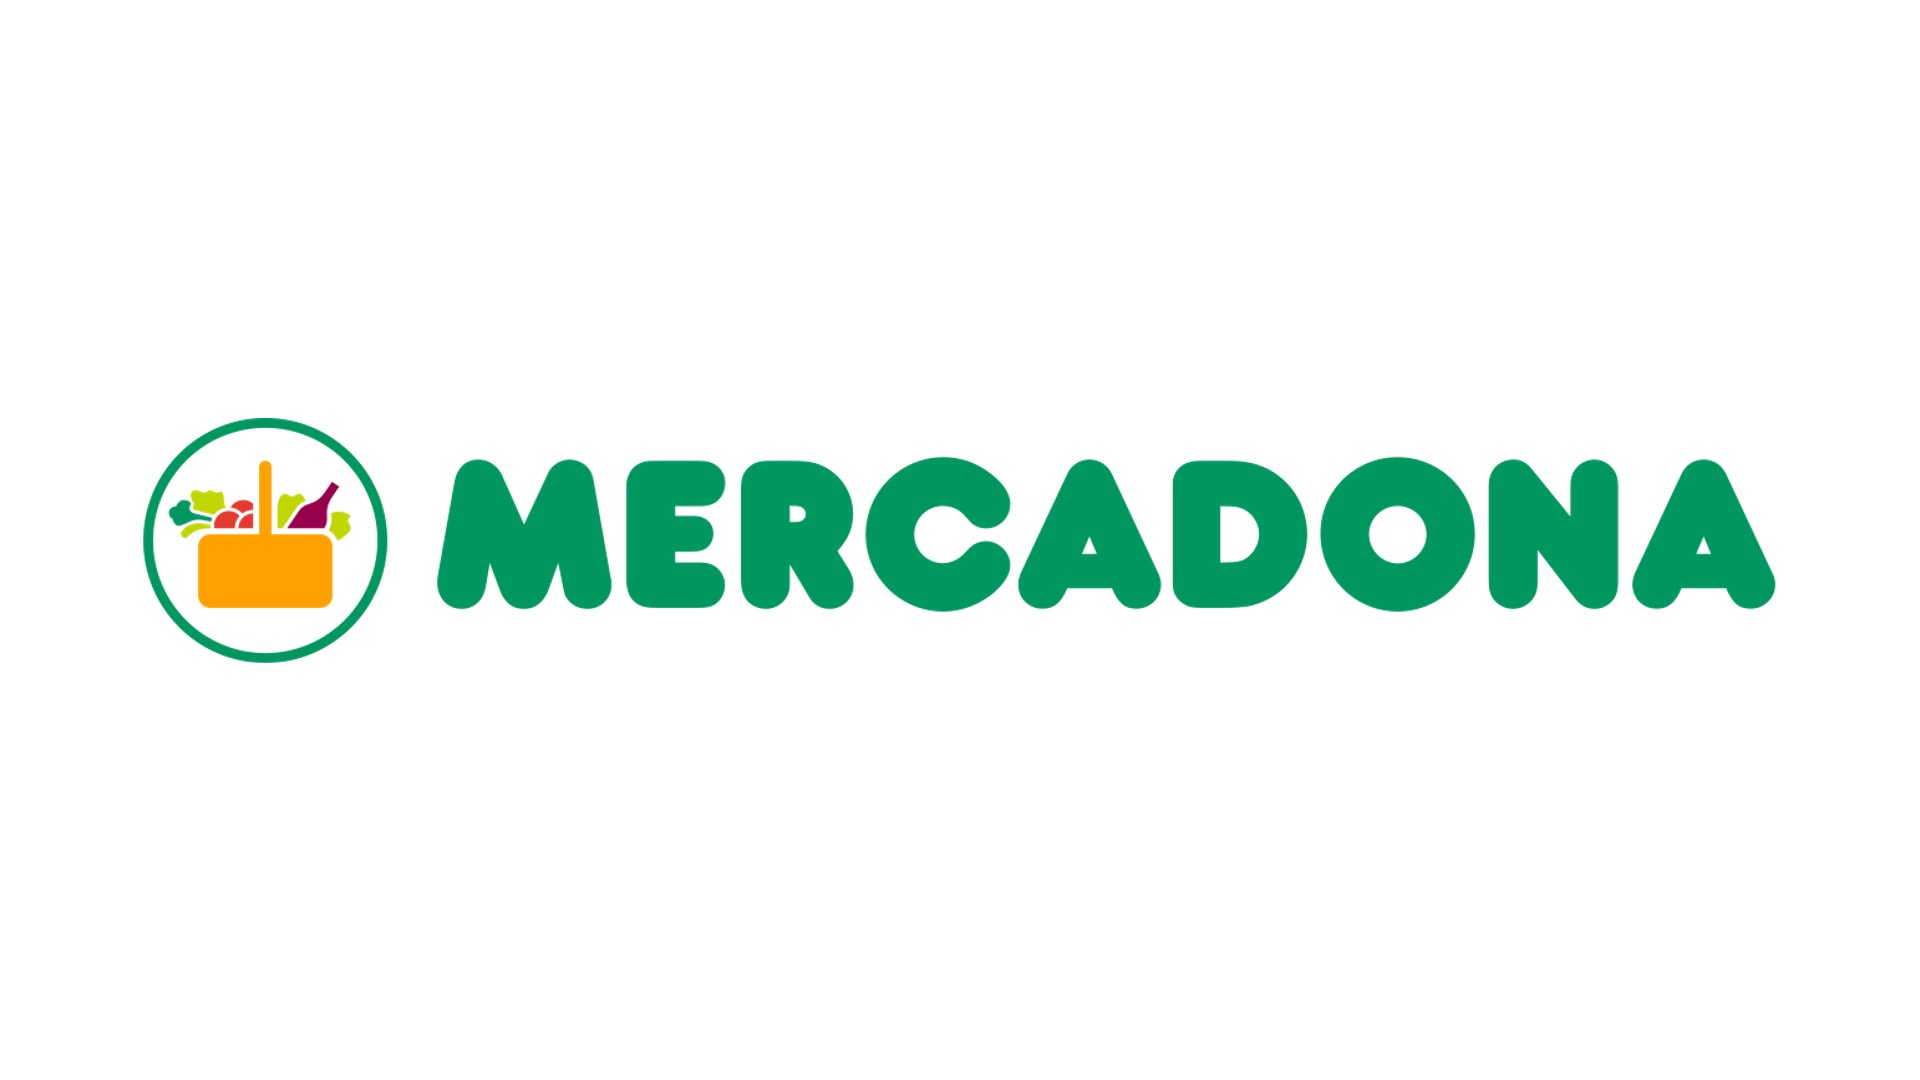 Mercadona: Spaniens dominierende Supermarktkette mit Kundenfokus